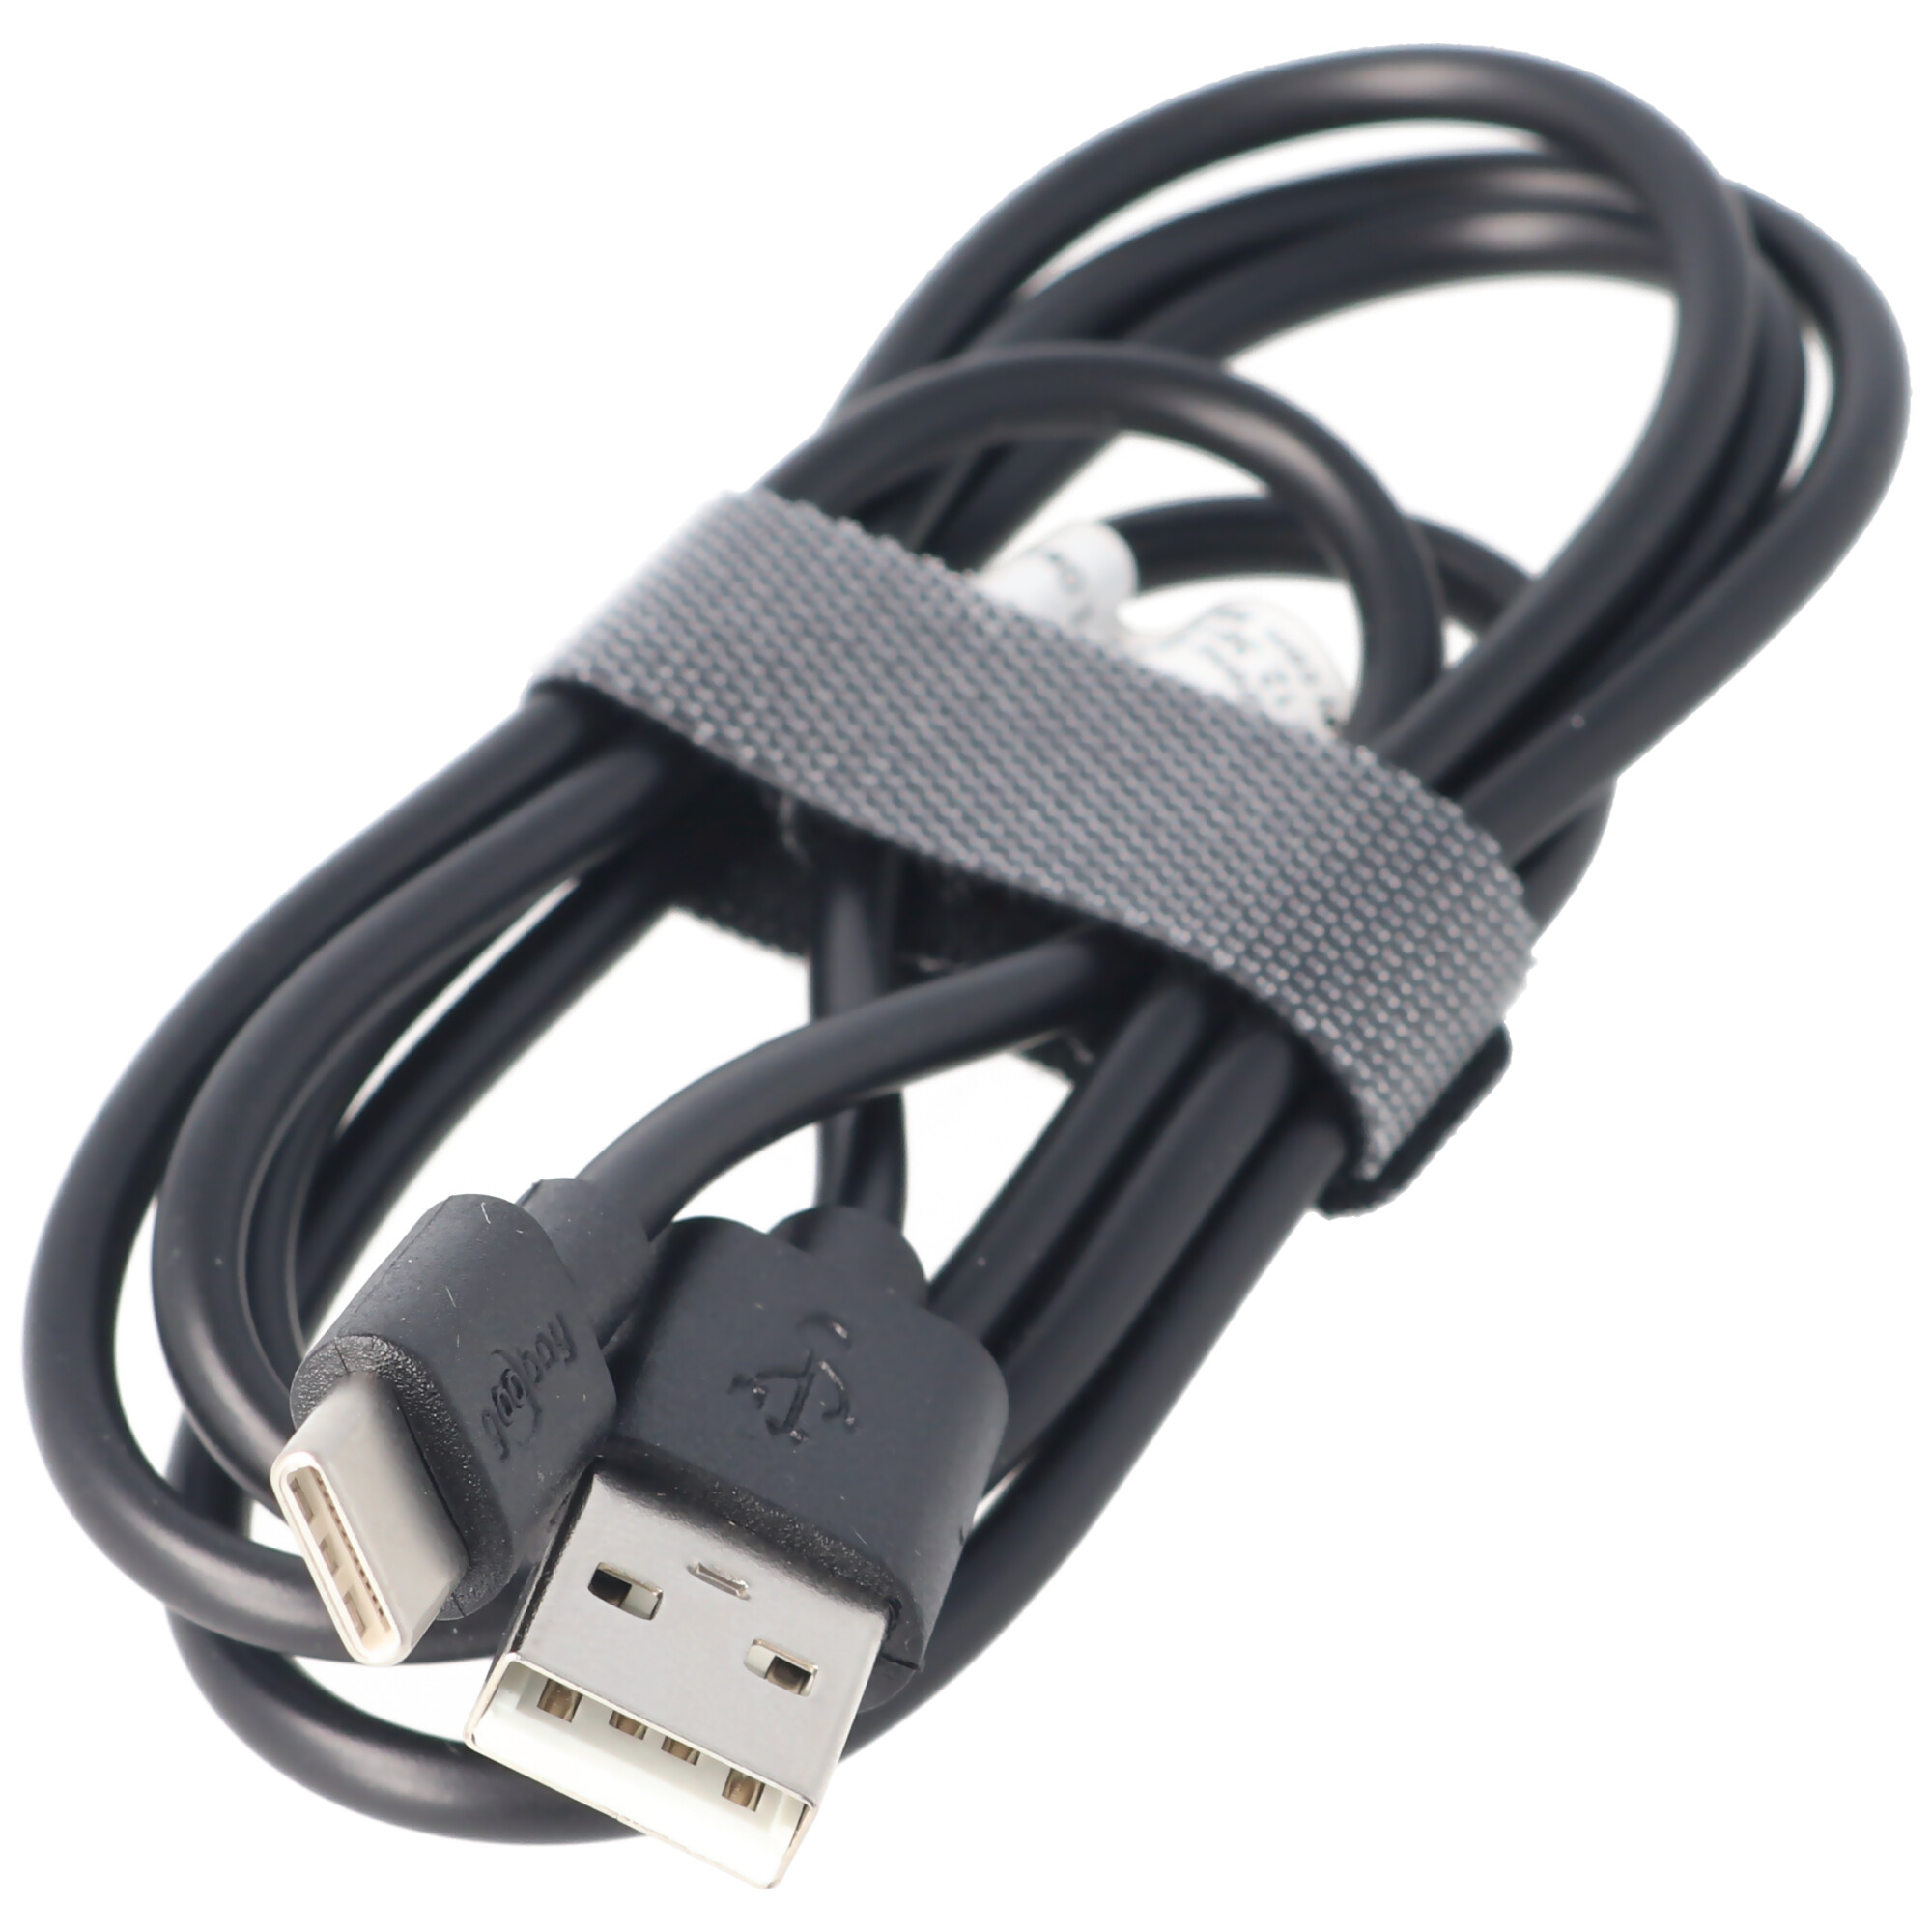 USB-C Lade- und Synchronisationskabel für alle Geräte mit USB-C Anschluss, 1 Meter Schwarz